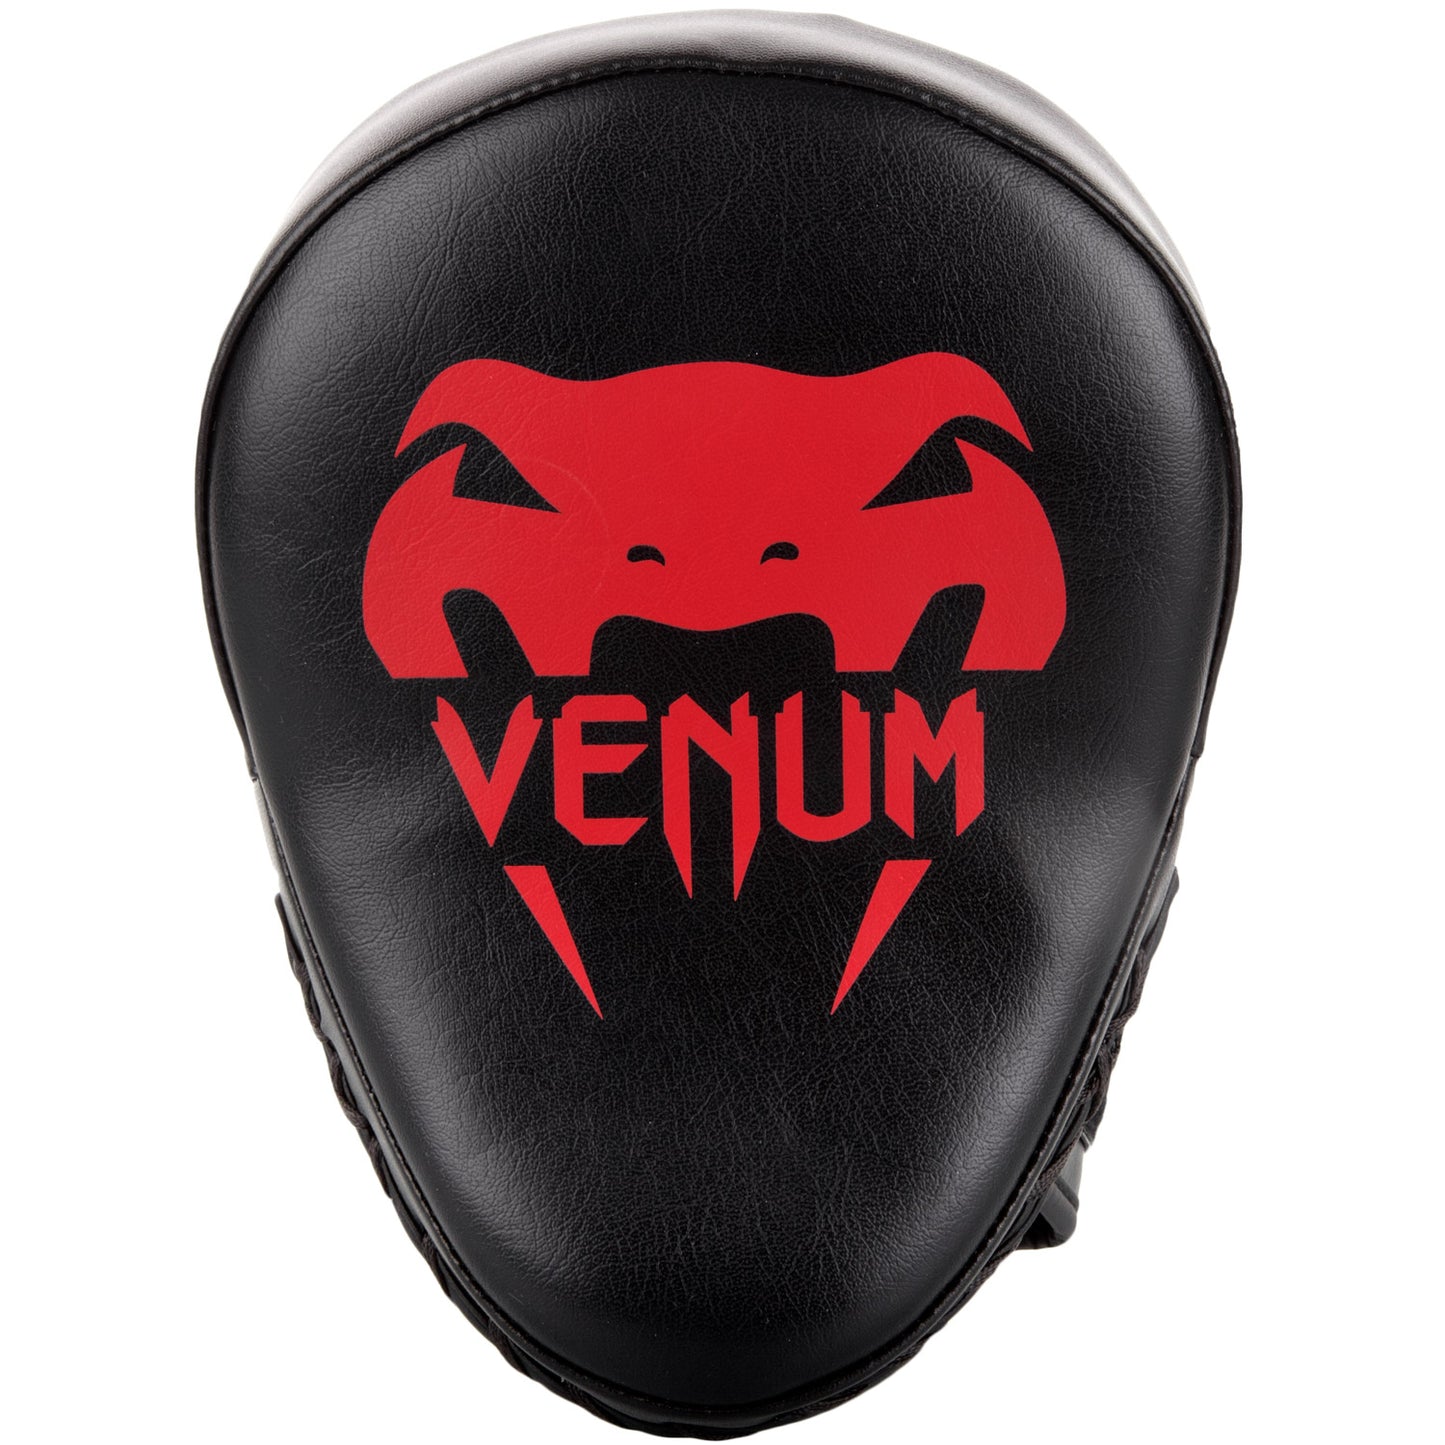 Venum Light Focus Mitts - Black/Red (Pair)